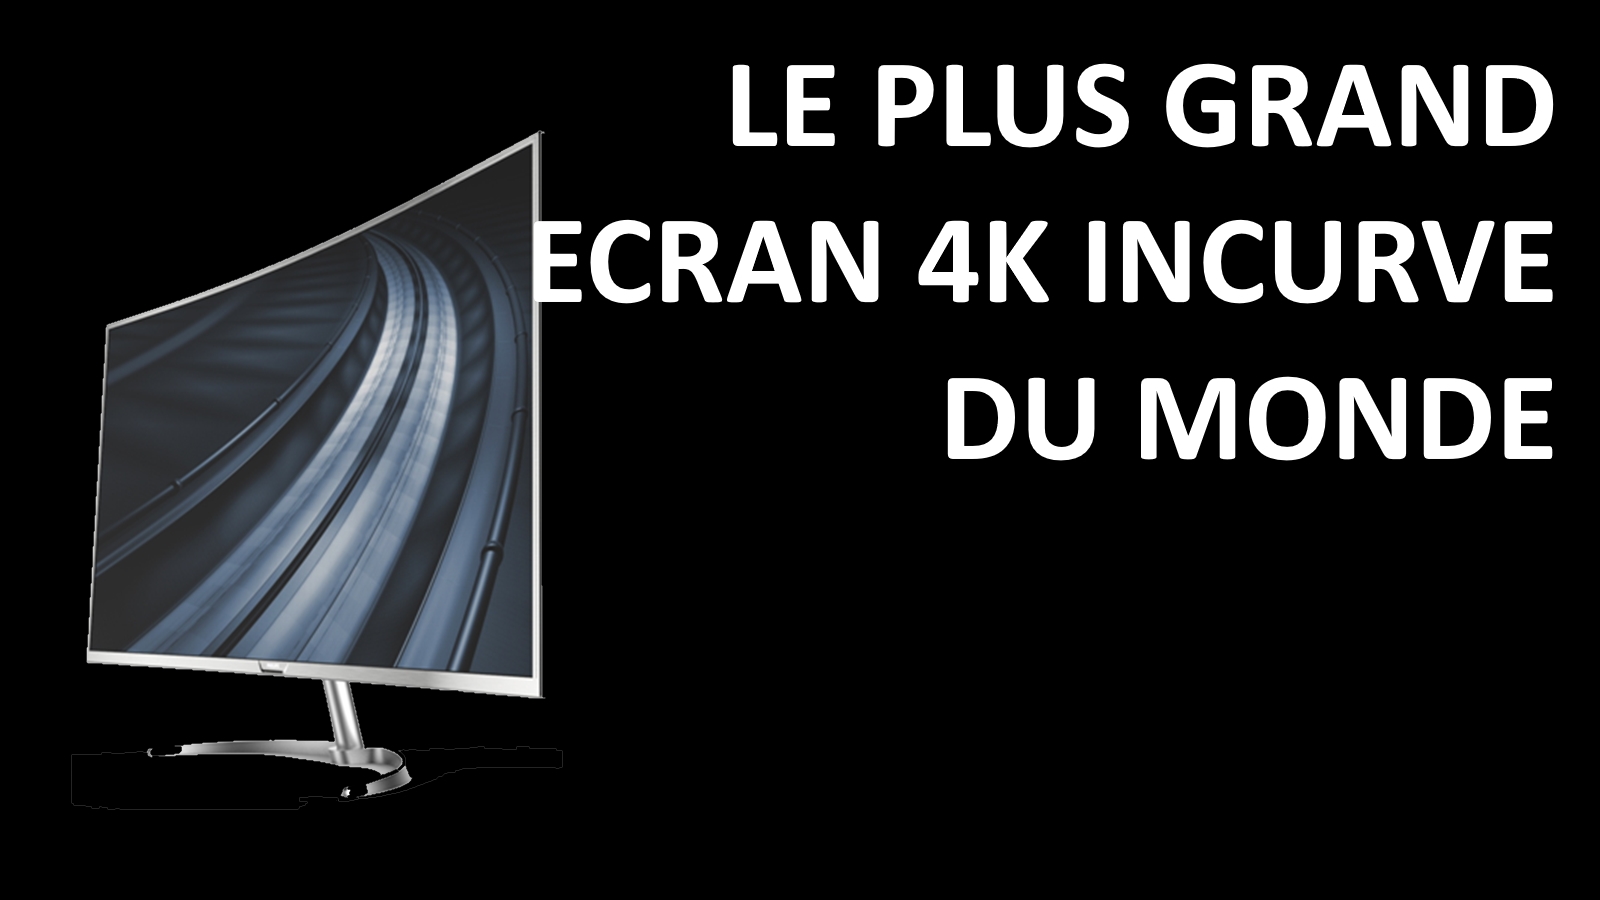 Philips Le plus grand écran 4K incurvé du monde